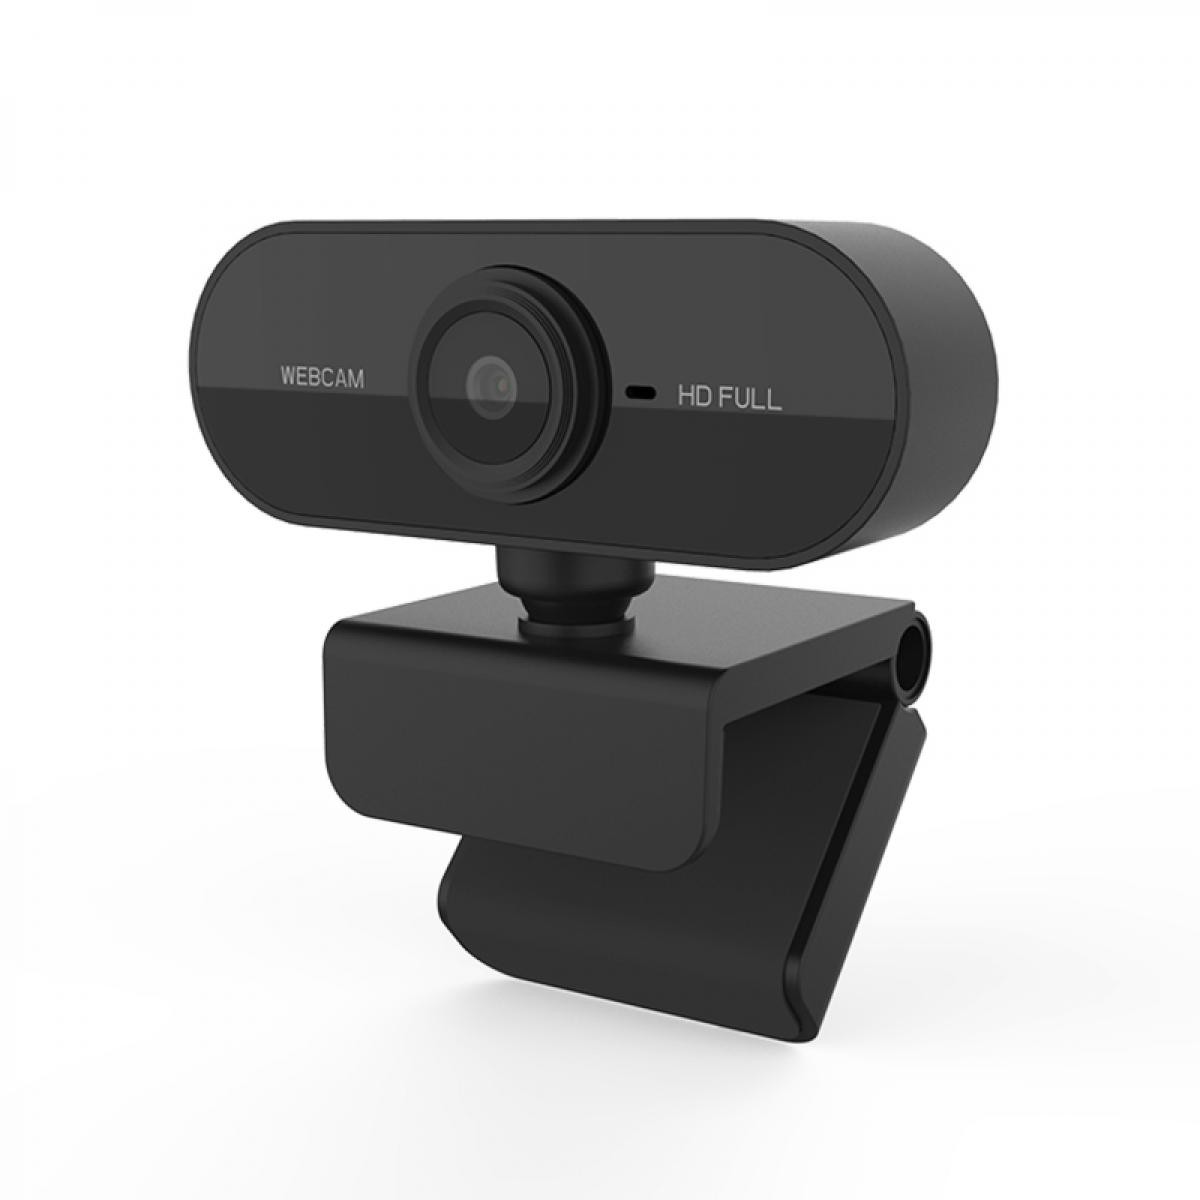 Ltppstore - Webcam Jeobest 720P Full HD avec Mise au point automatique ( Caméra Webcam ) - Webcam